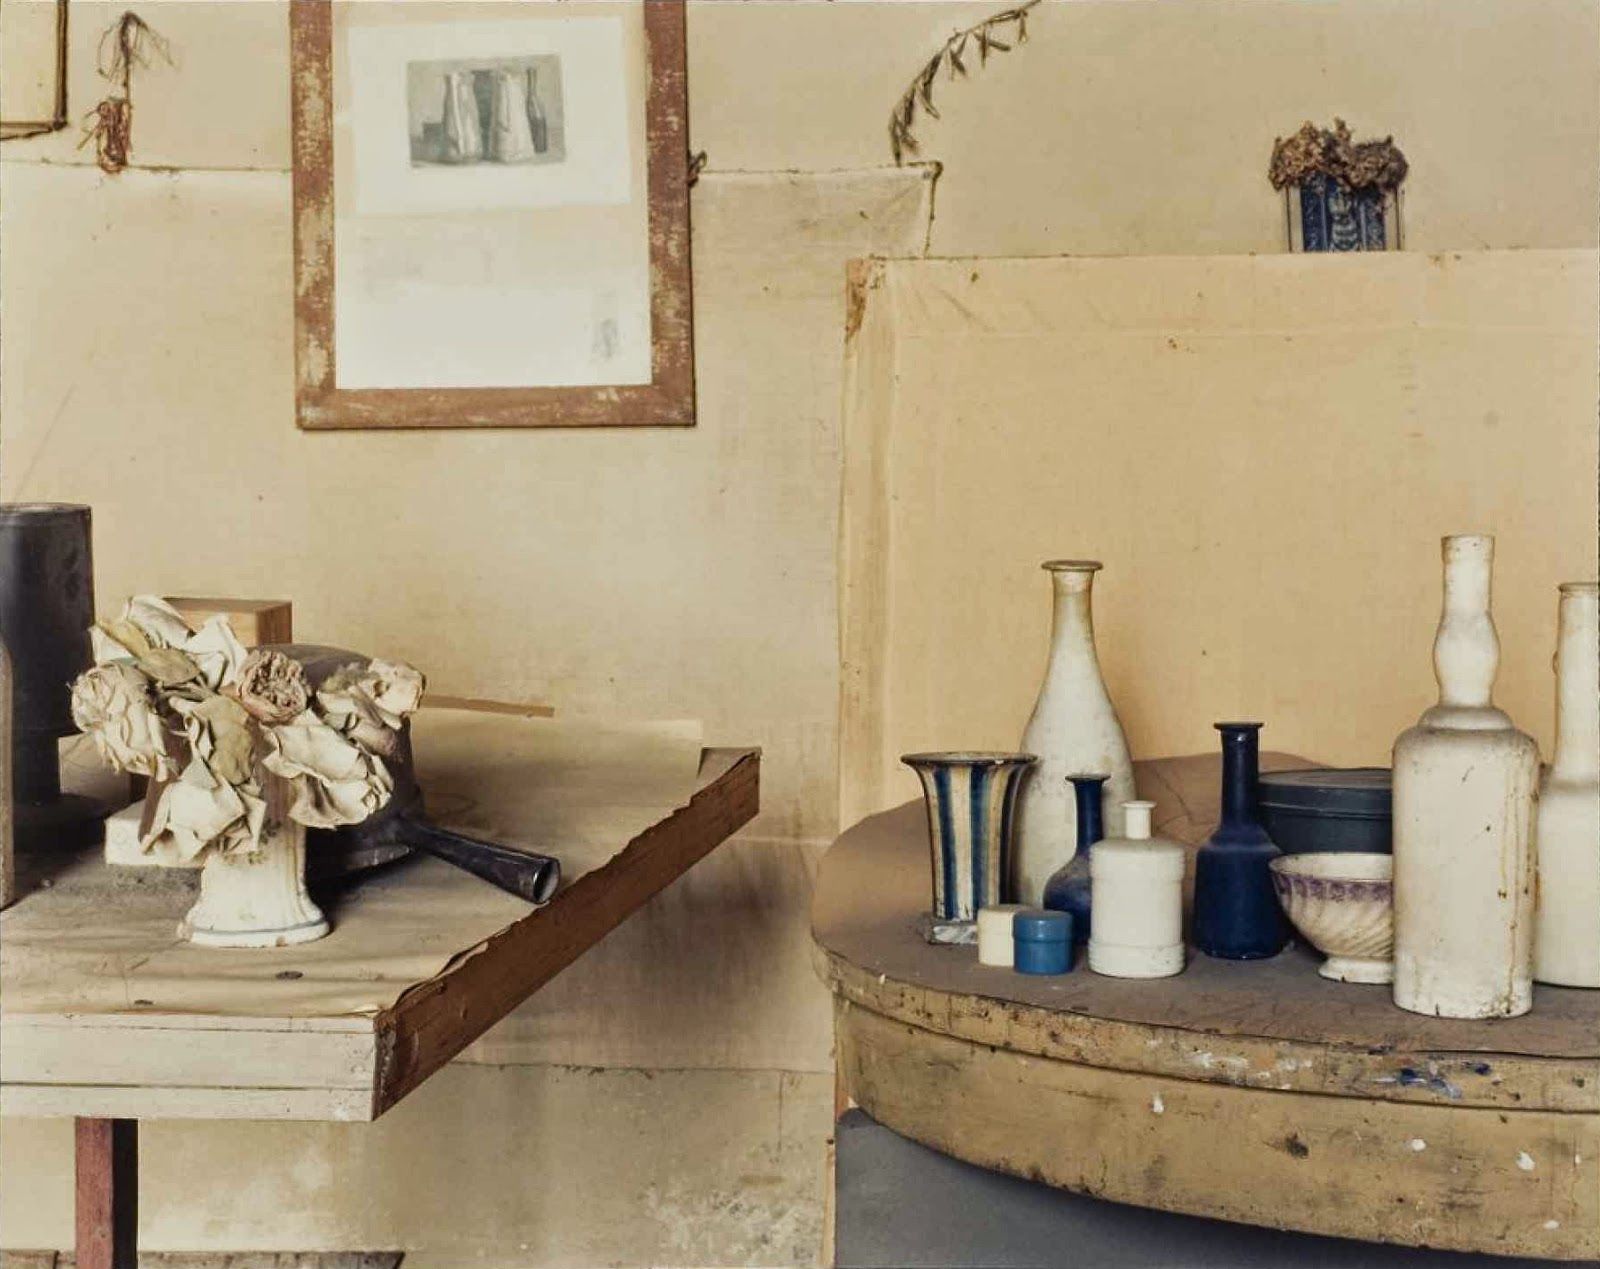   Luigi Ghirri  Atelier Giorgio Morandi, 1990 Image: © Eredi Luigi Ghirri 